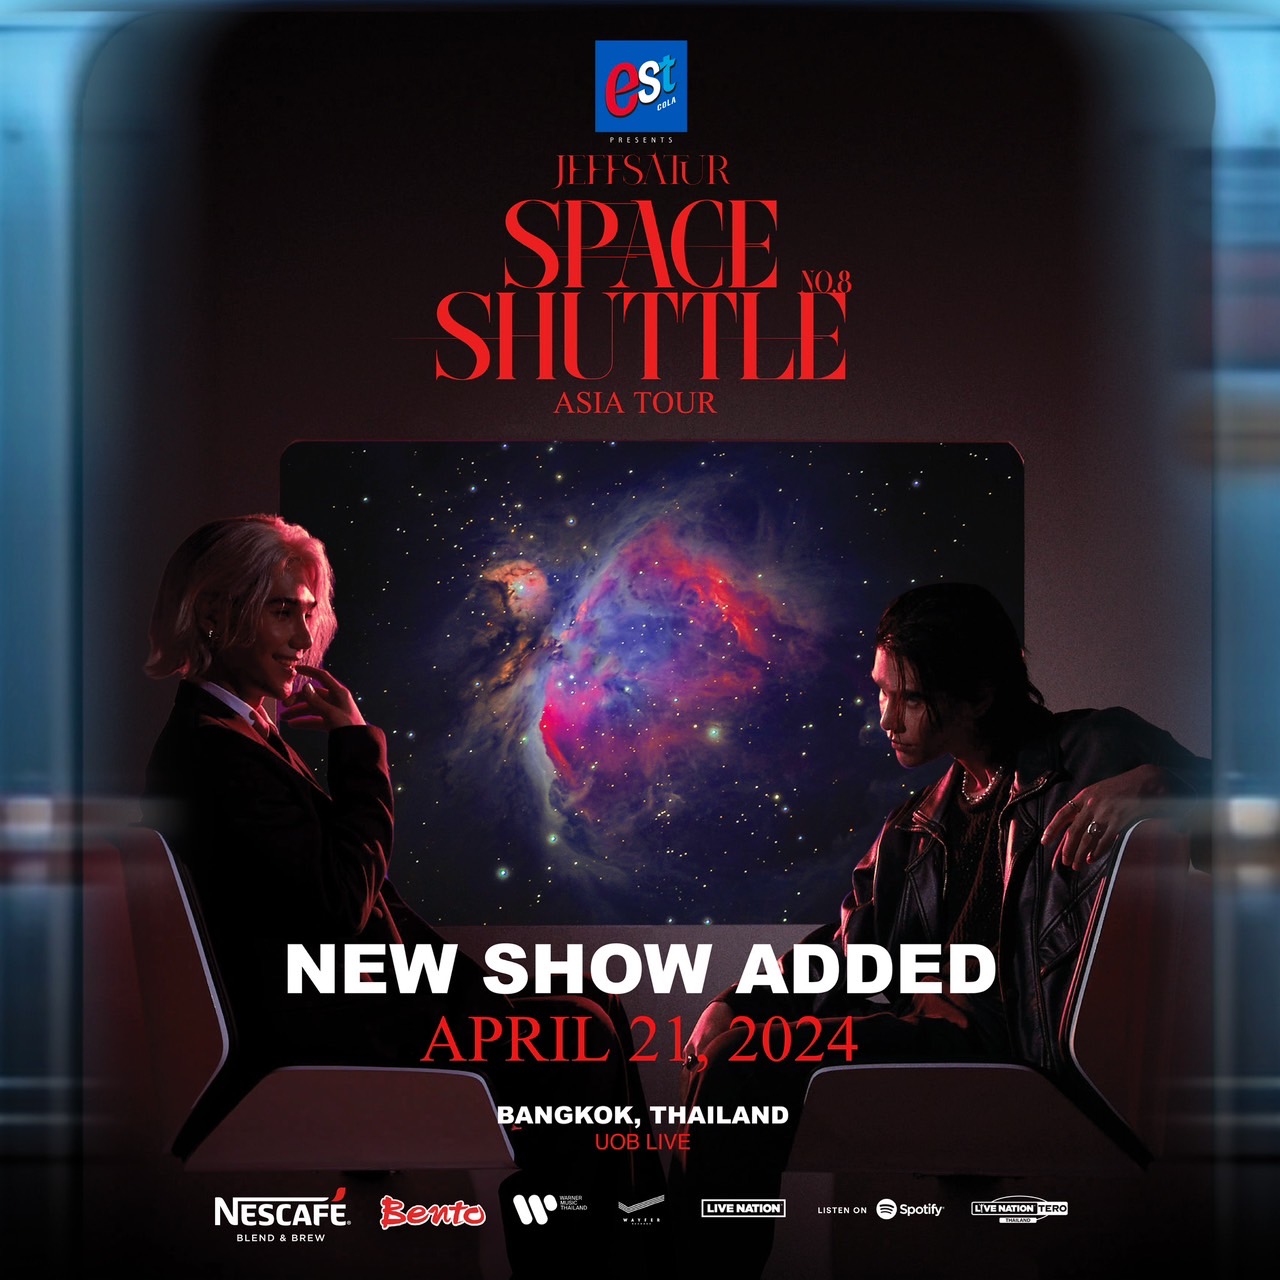 กระแสดีเกินต้าน!! พร้อมเปิดรอบ2 กับงาน est Cola Presents JEFF SATUR: SPACE SHUTTLE NO.8 ASIA TOUR IN BANGKOK